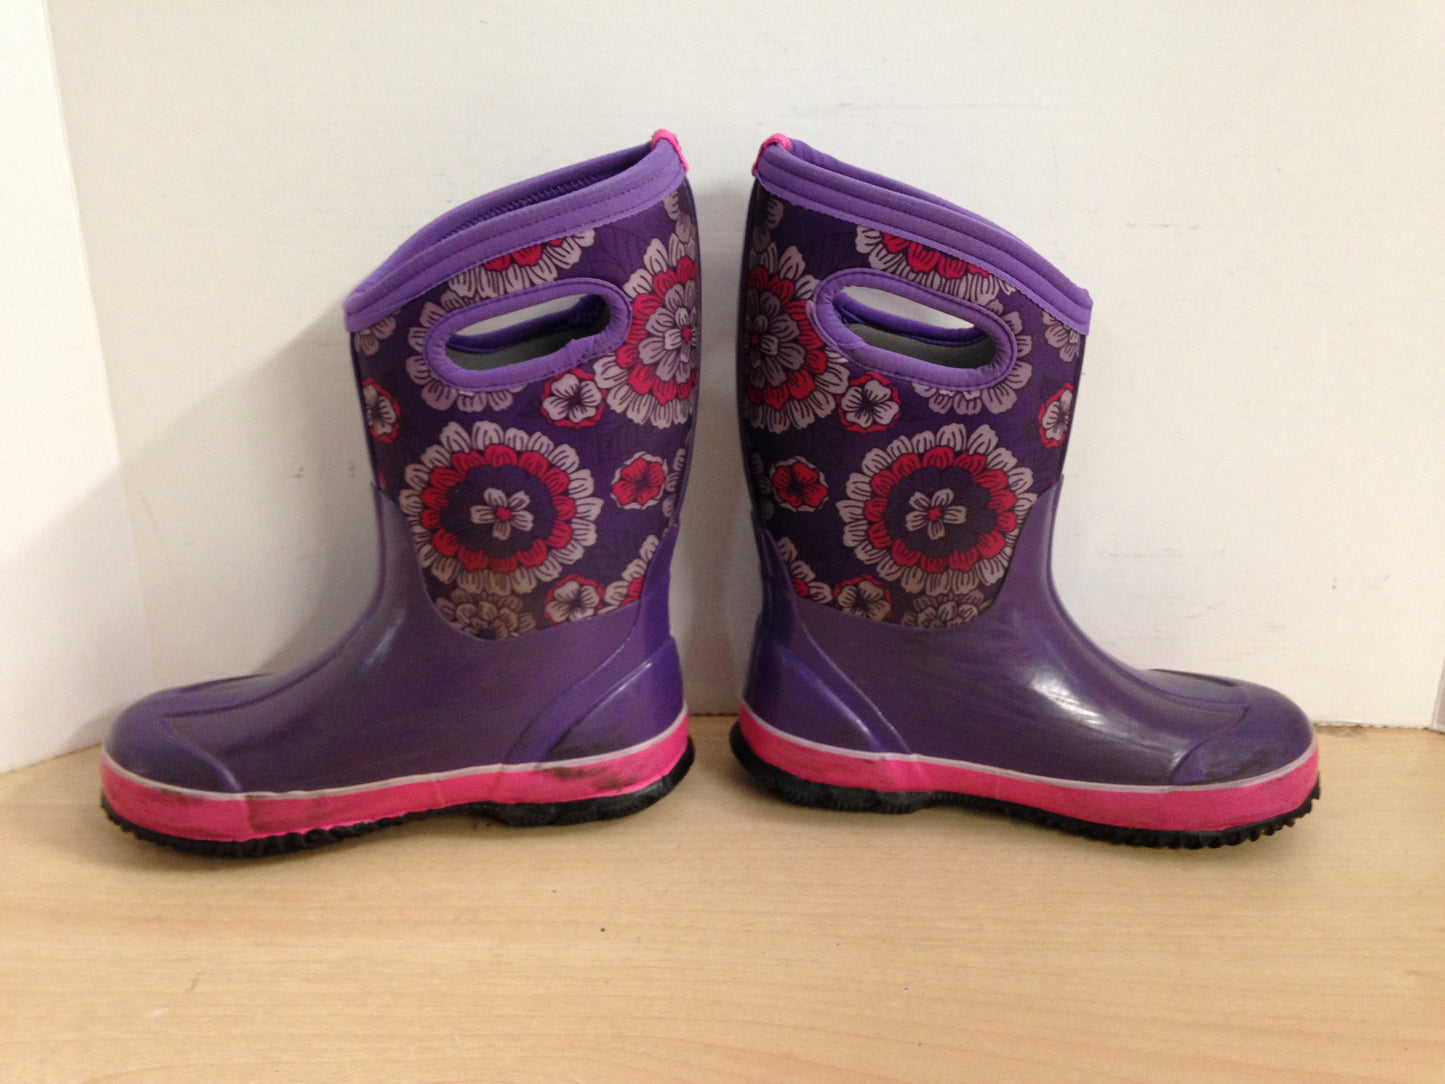 Bogs Brand Child Size 3 Pink Purple Flowers -30 Degree Black Neoprene Rubber Rain Winter Snow Waterproof Boots